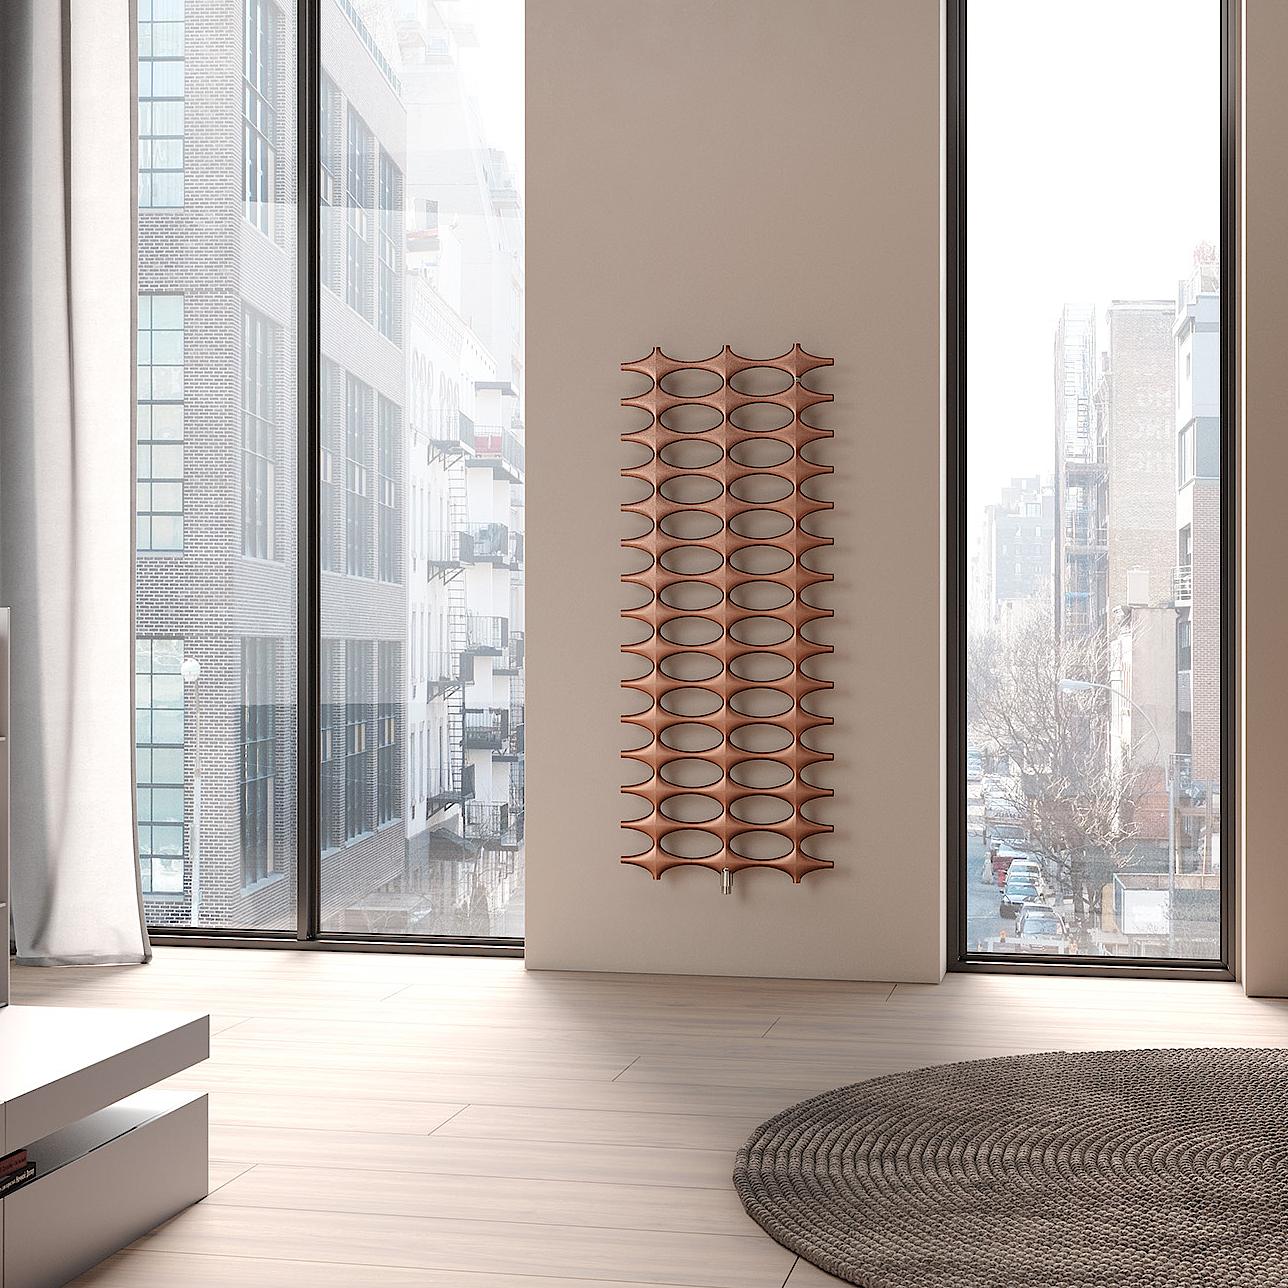 Radiatore da bagno e di design Kermi Ideos – design del radiatore unico e inconfondibile in una struttura semplice.